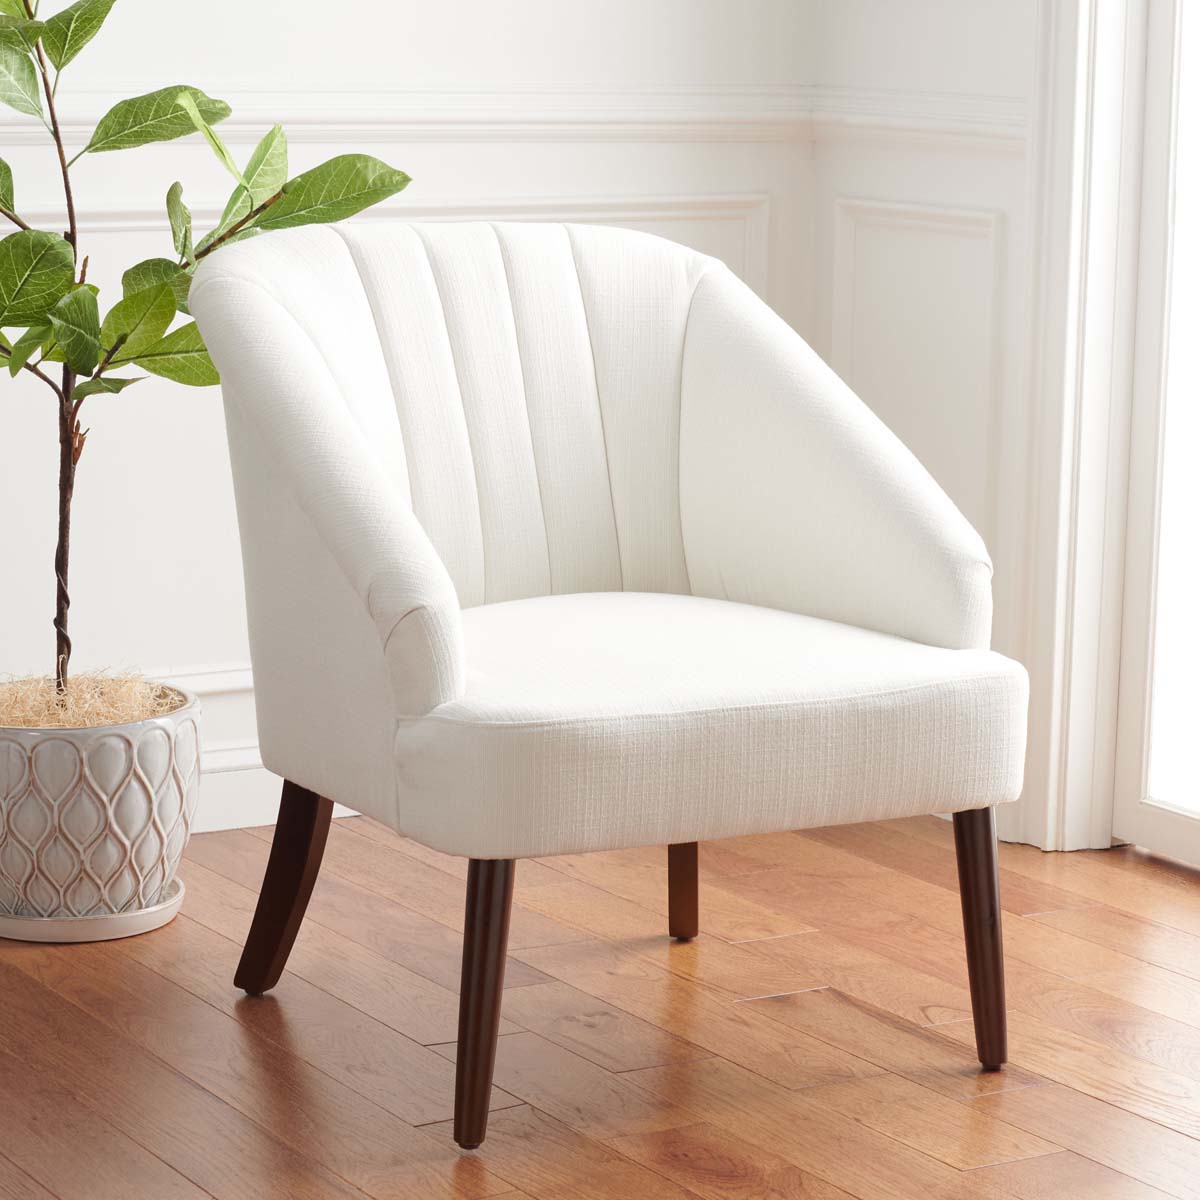 Safavieh Areli Accent Chair , ACH4004 - White